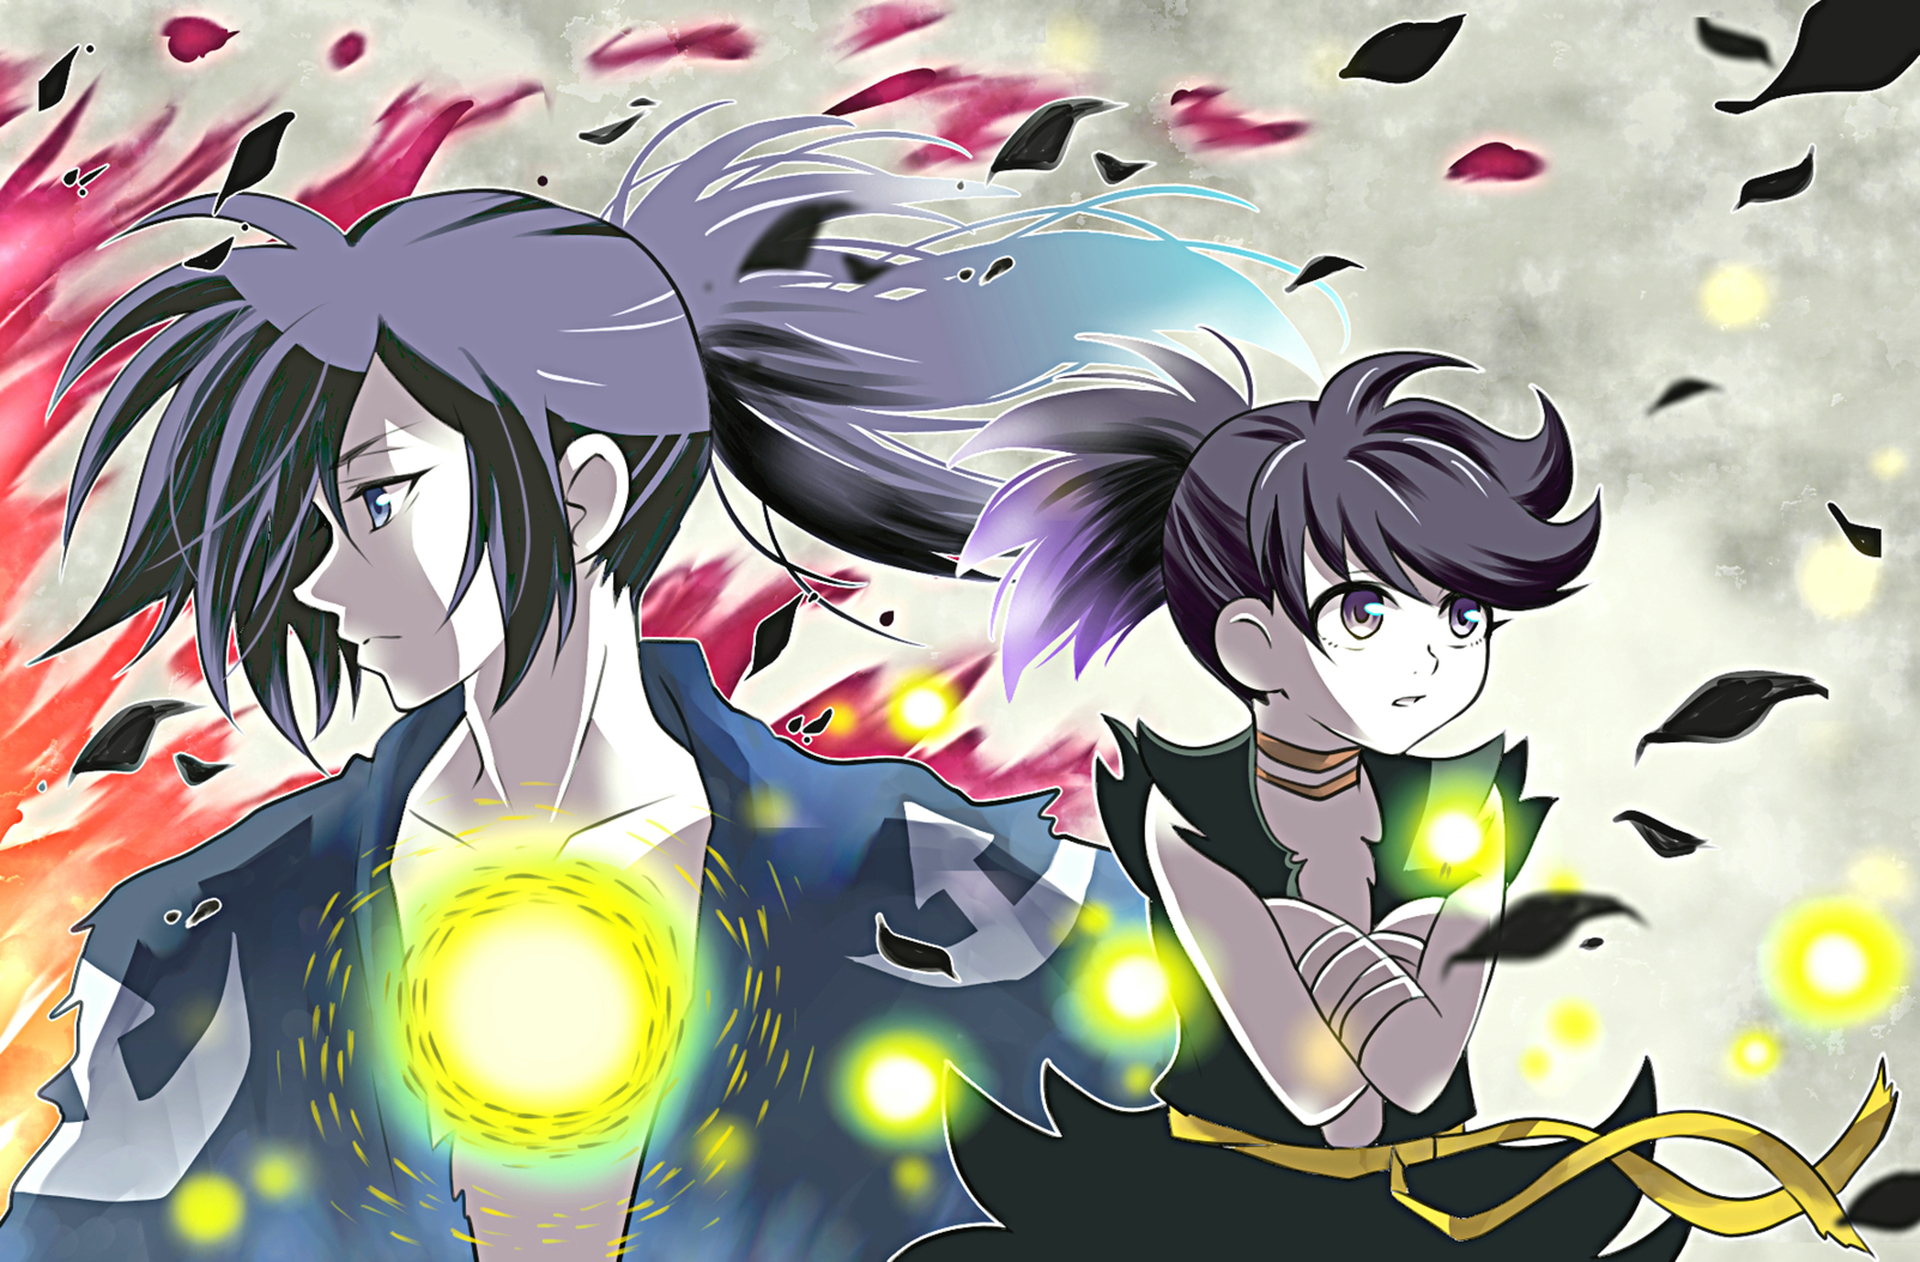 Descarga gratuita de fondo de pantalla para móvil de Animado, Hyakkimaru (Dororo), Dororo (Anime), Dororo, Dororo (Dororo).